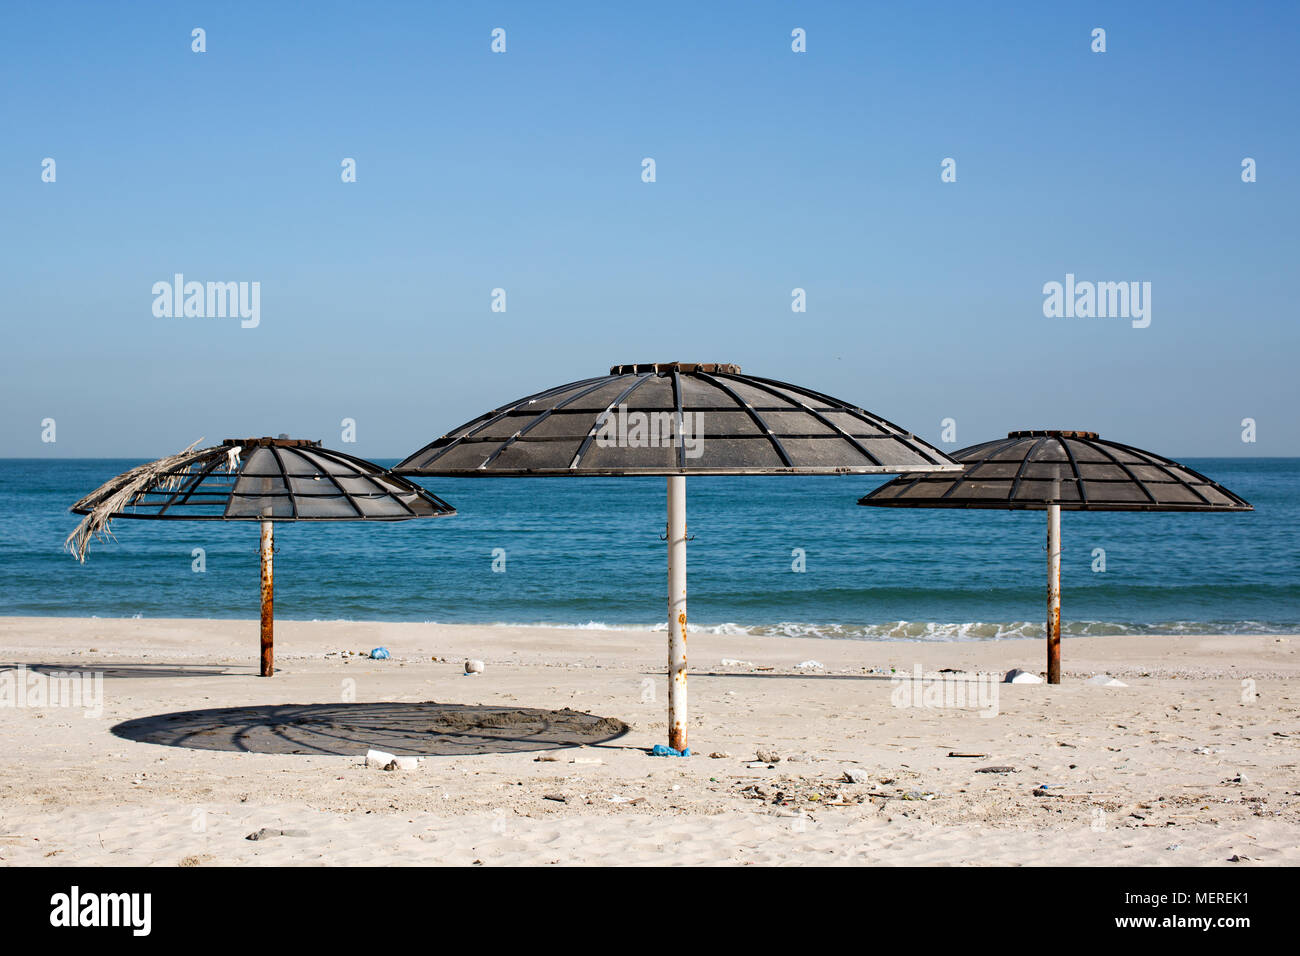 Sonnenschirme am Strand in Kuwait. Schatten Schutz vor der extremen Hitze im Nahen Osten. Stockfoto